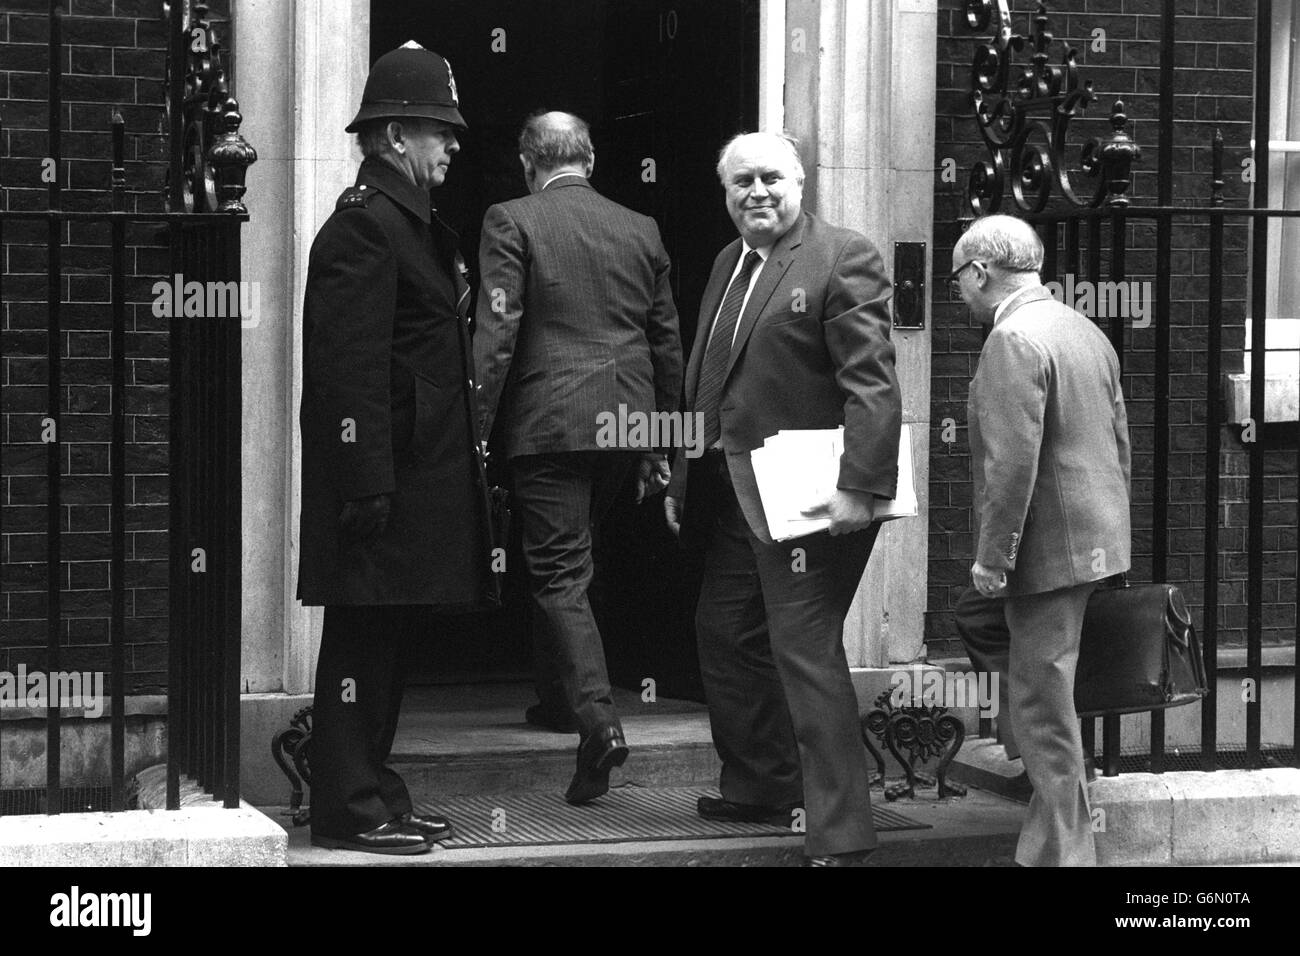 Norman Willis, secrétaire général de TUC, arrive au 10 Downing Street pour une réunion avec Margaret Thatcher, qui rencontre les dirigeants de TUC dans le but de sortir de l'impasse. Banque D'Images